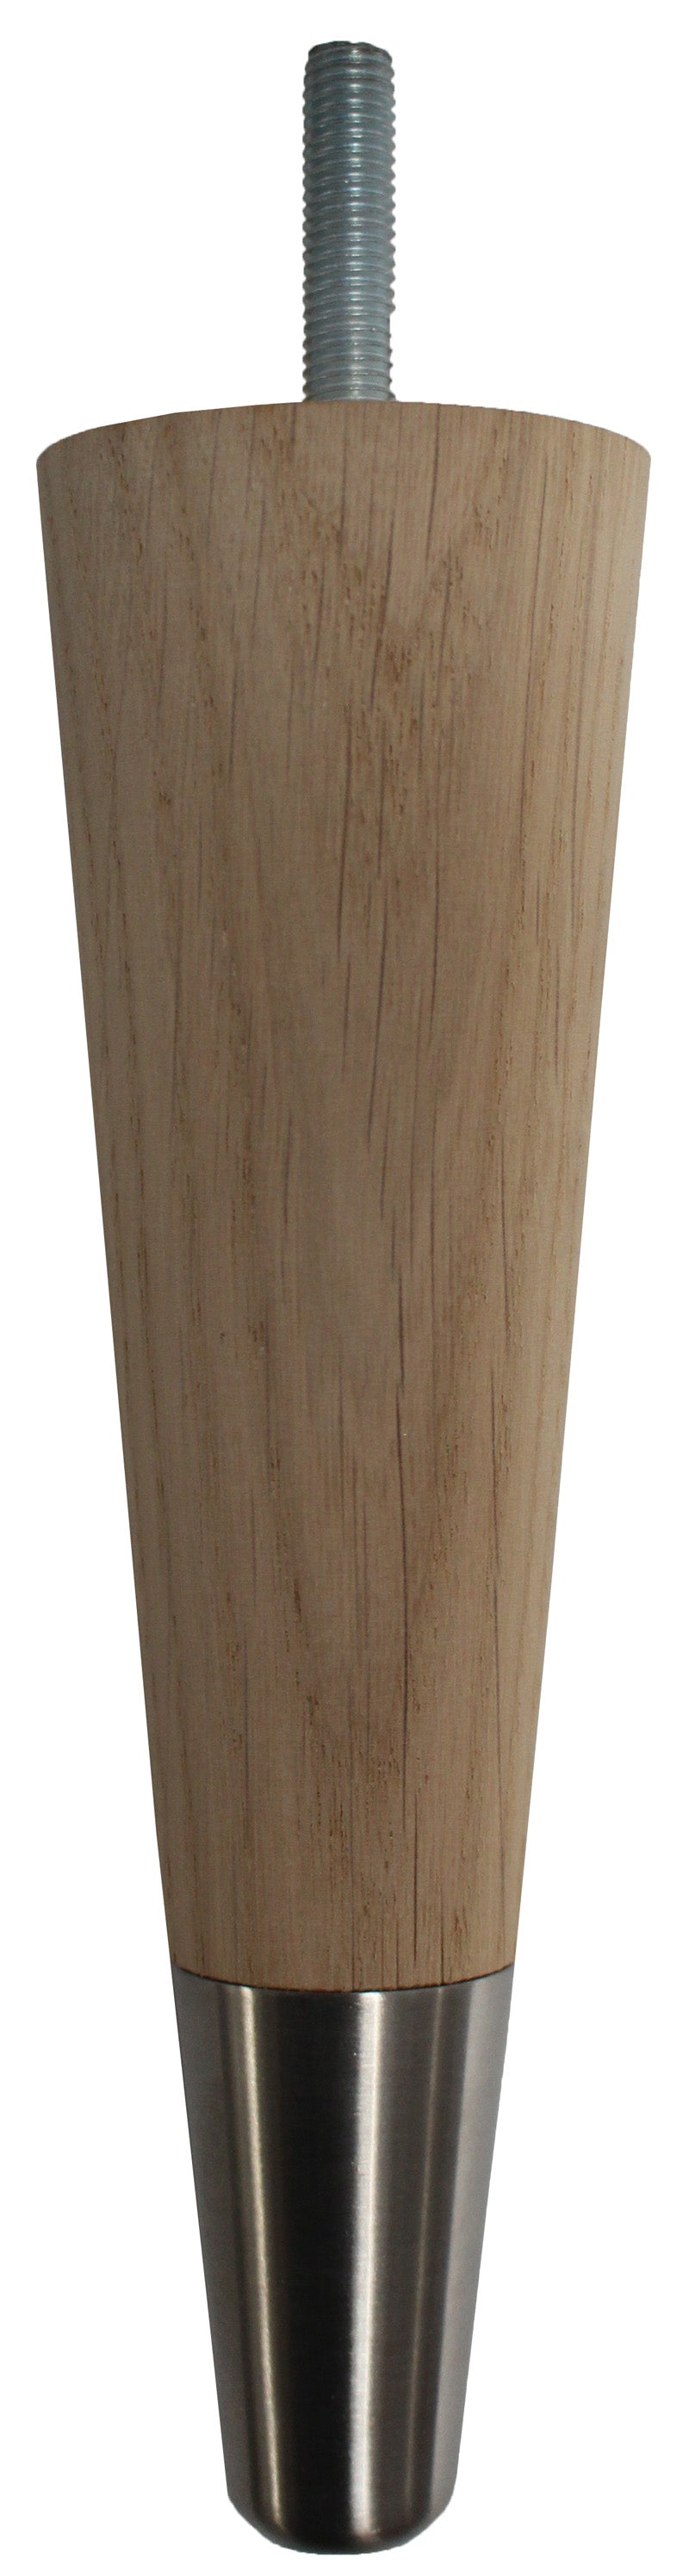 Carin Solid Oak Tapered Furniture Legs